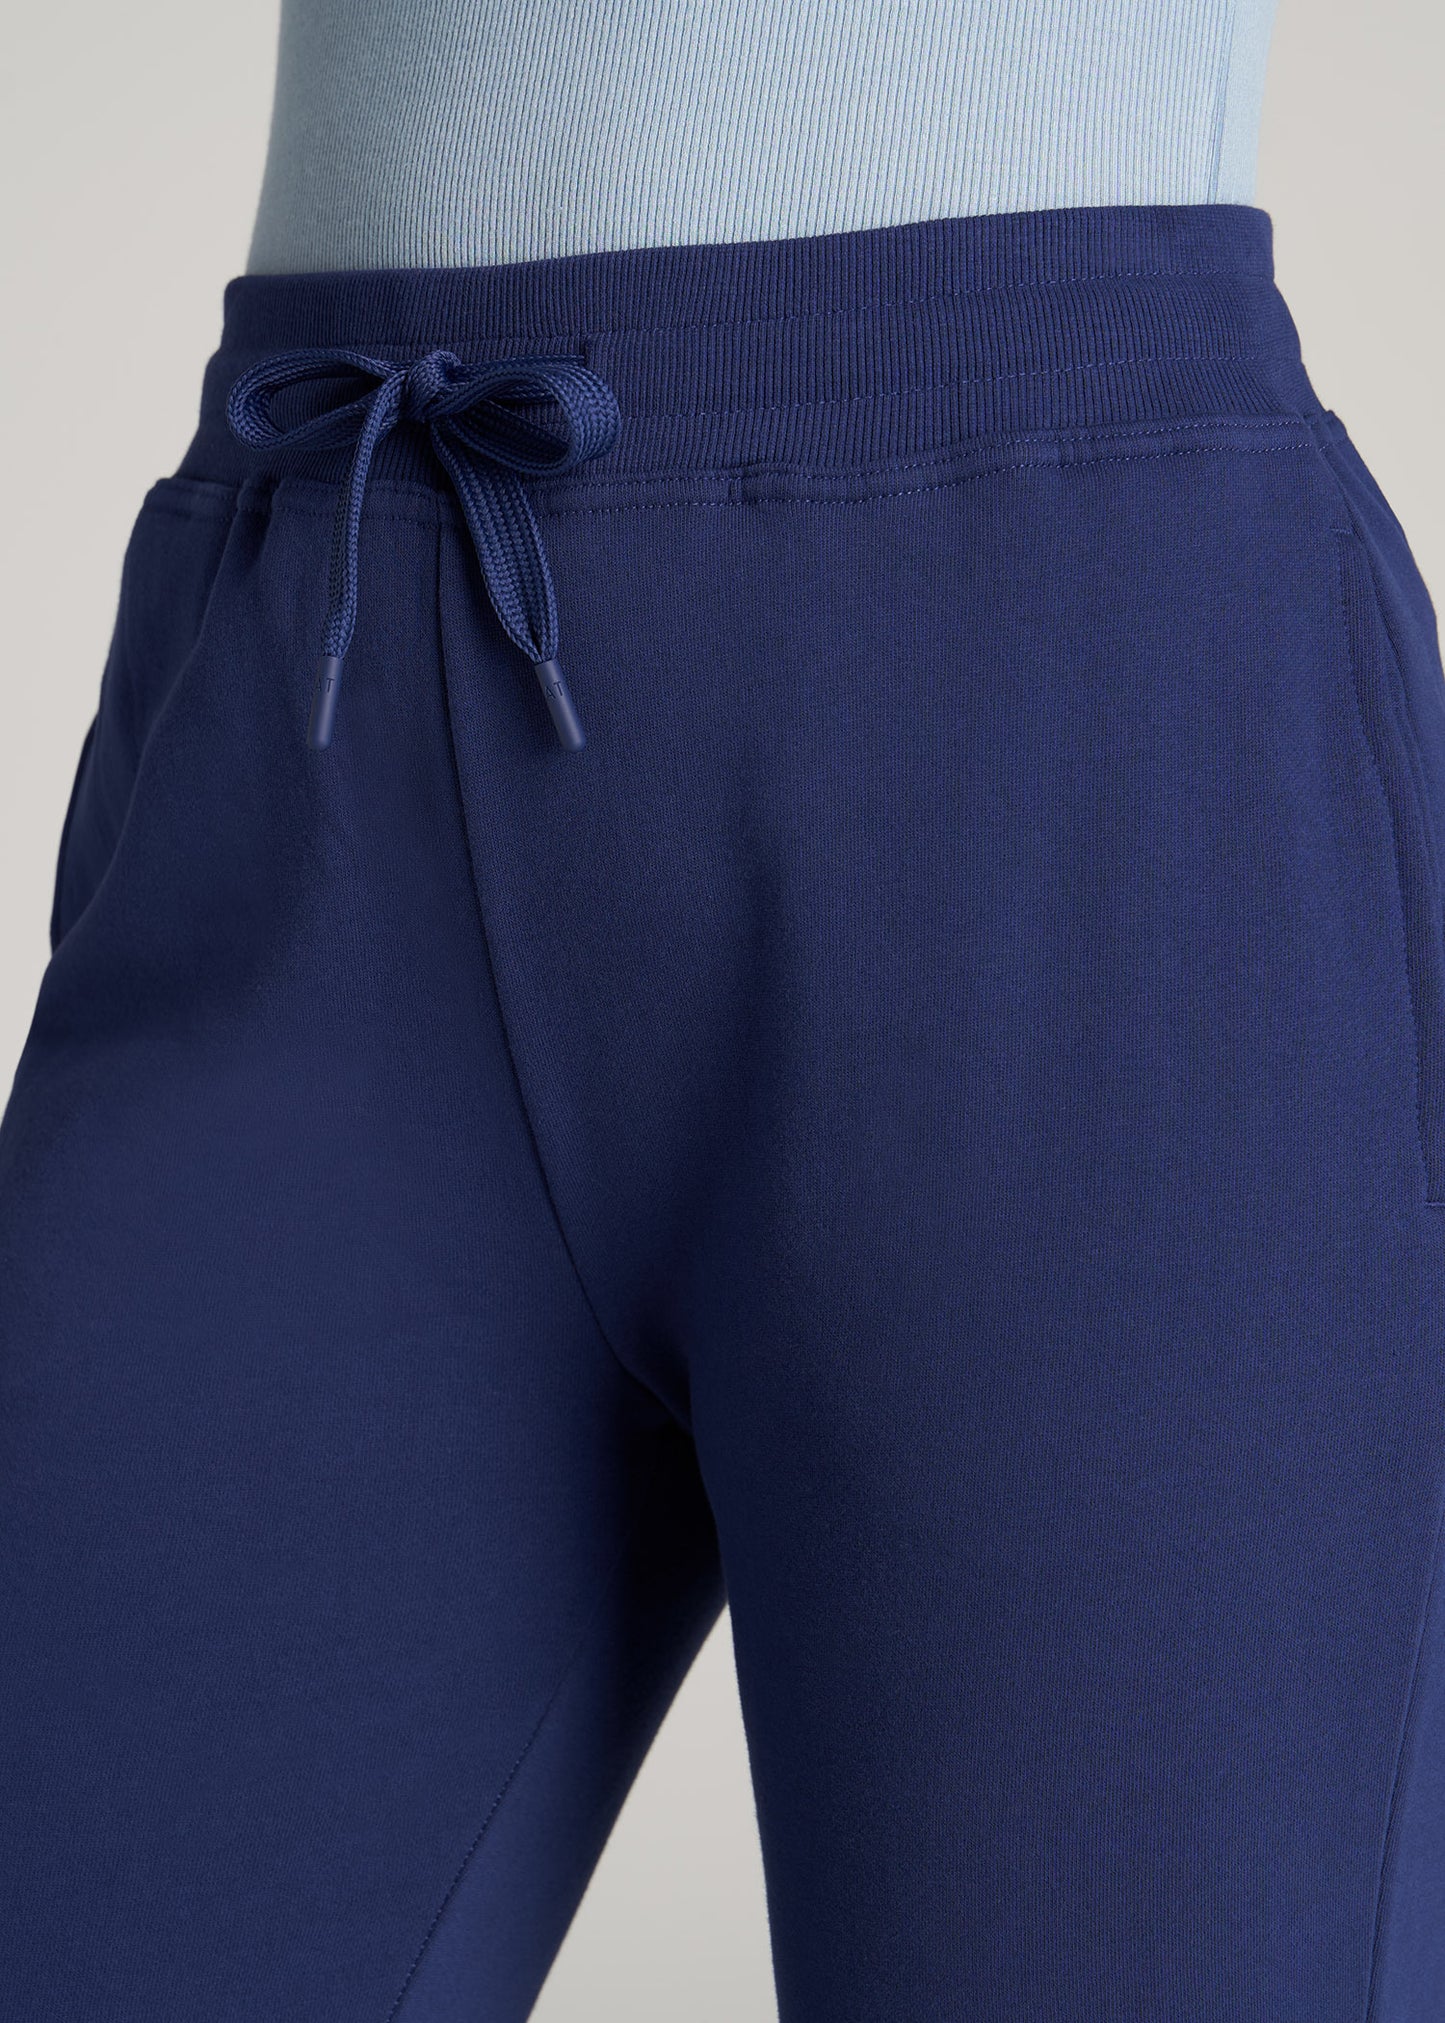       American-Tall-Women-WKND-Fleece-Open-Bottom-Pant-Midnight-Blue-detail